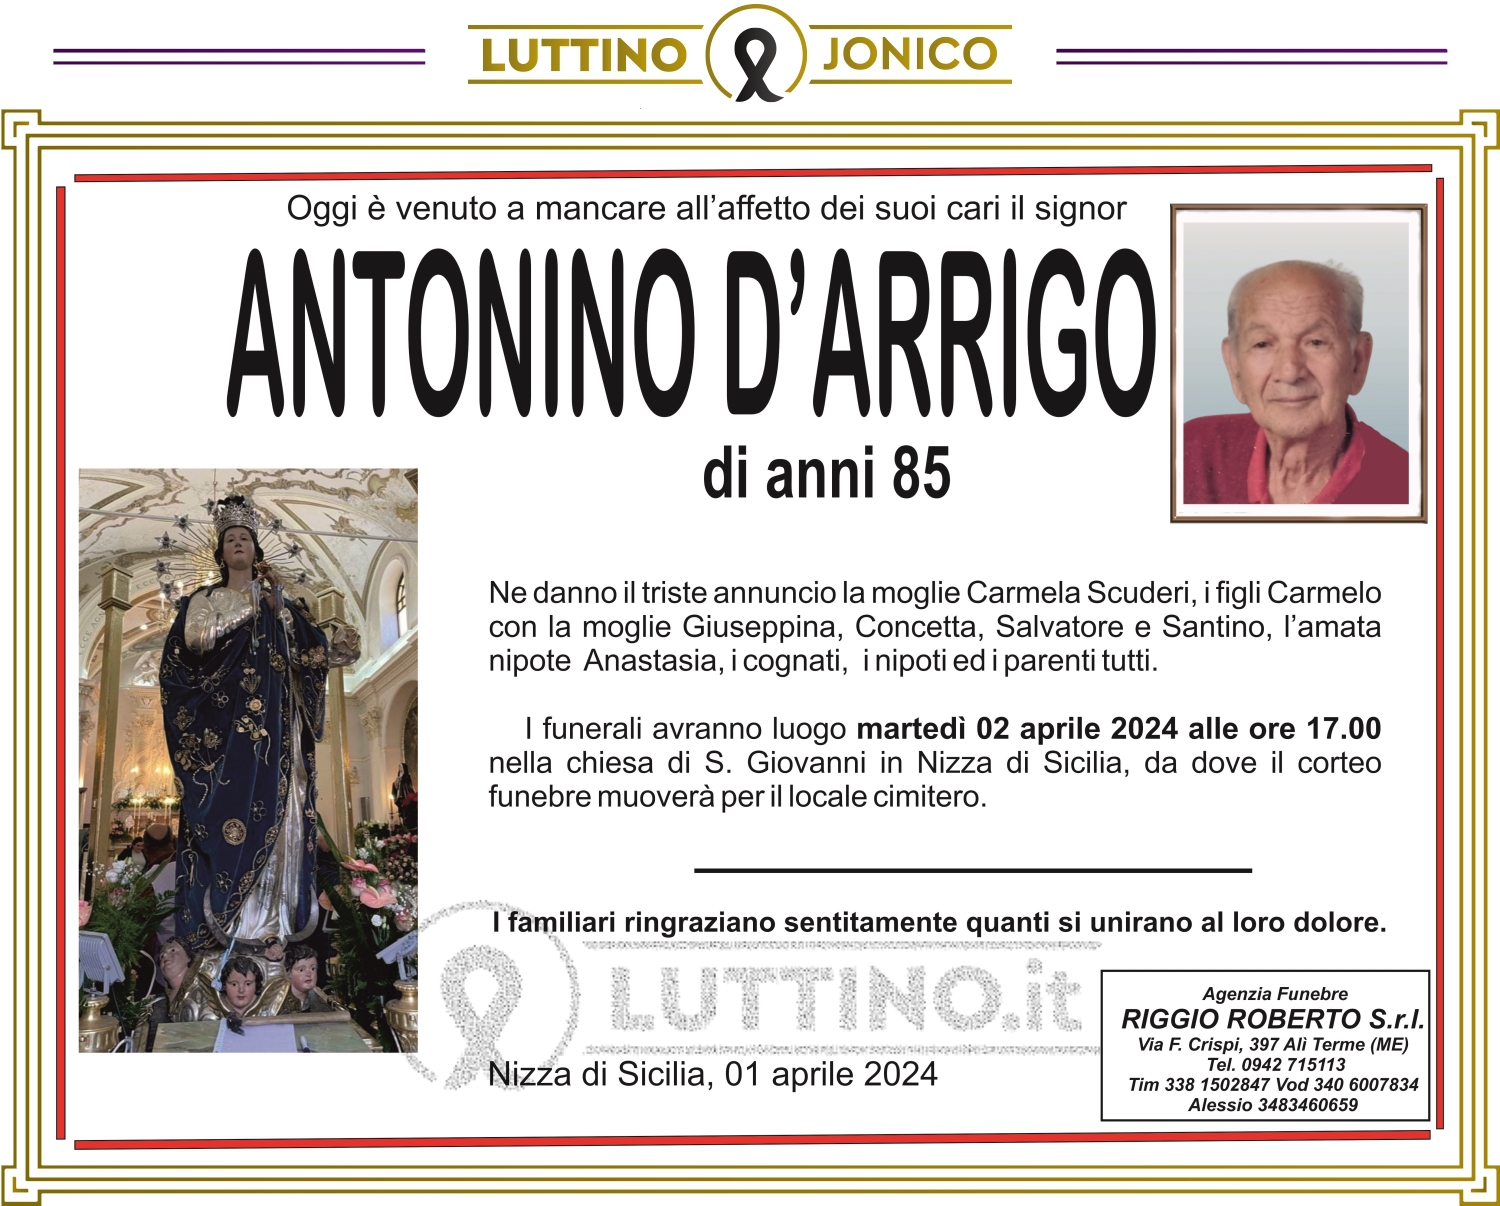 Antonino D'Arrigo